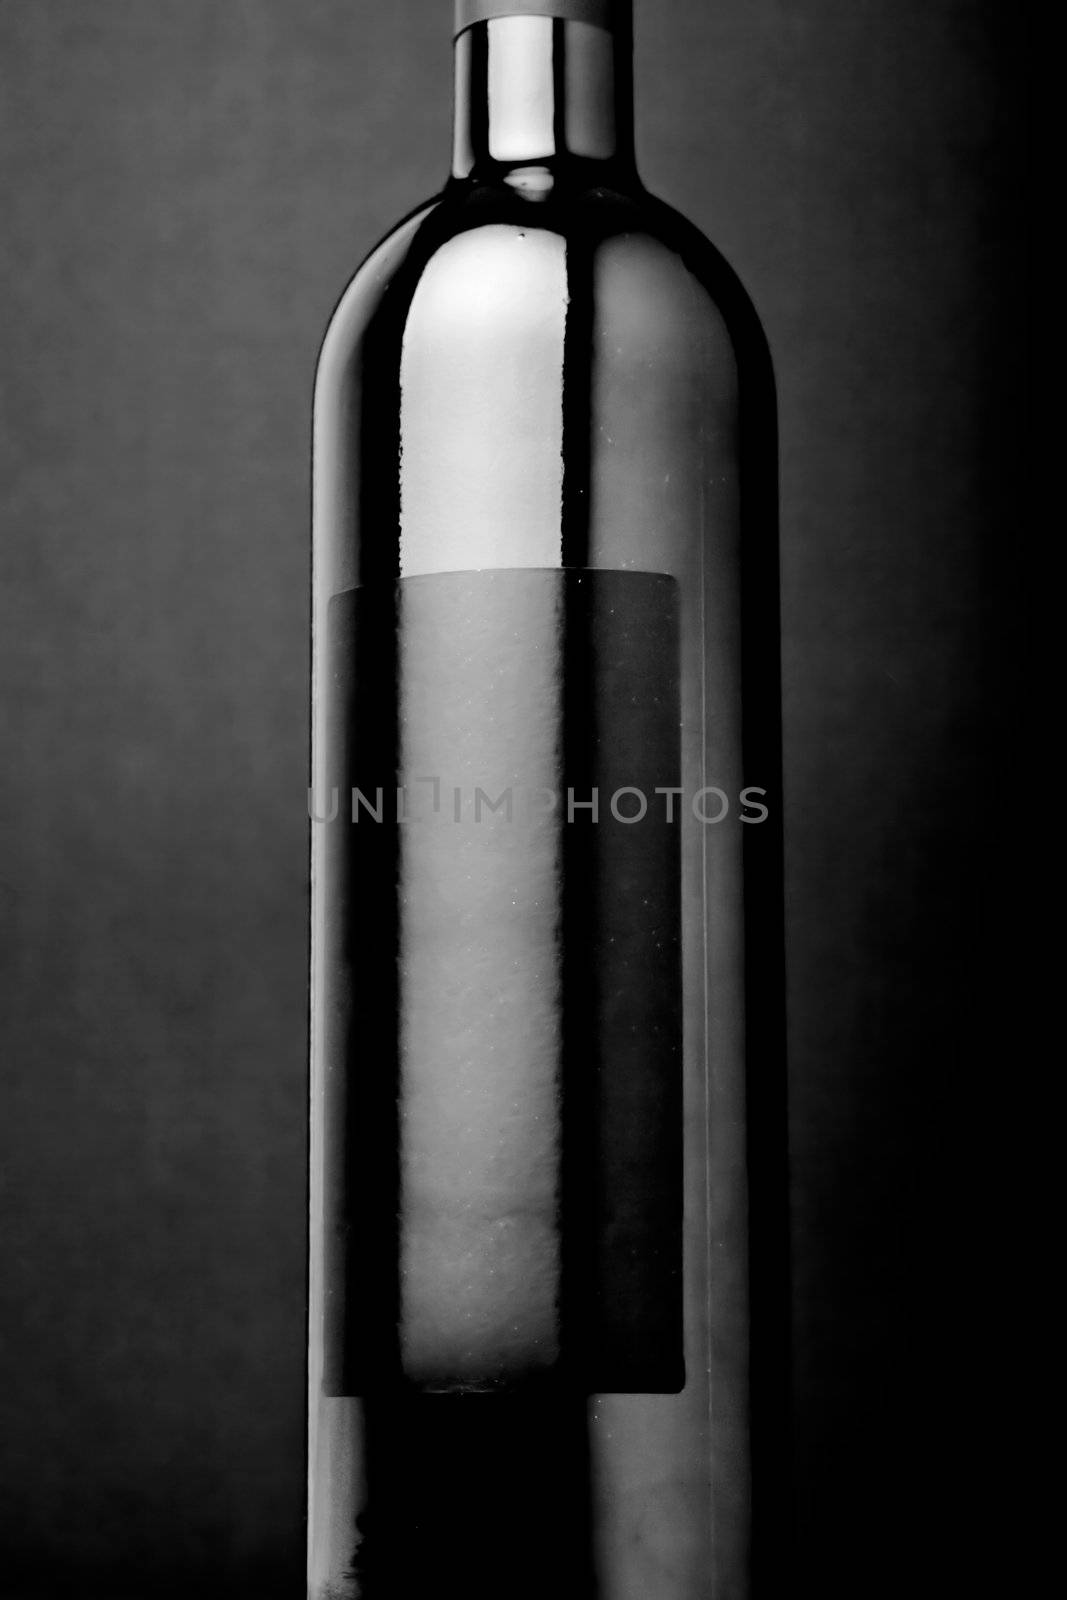 Wine bottle by kokimk